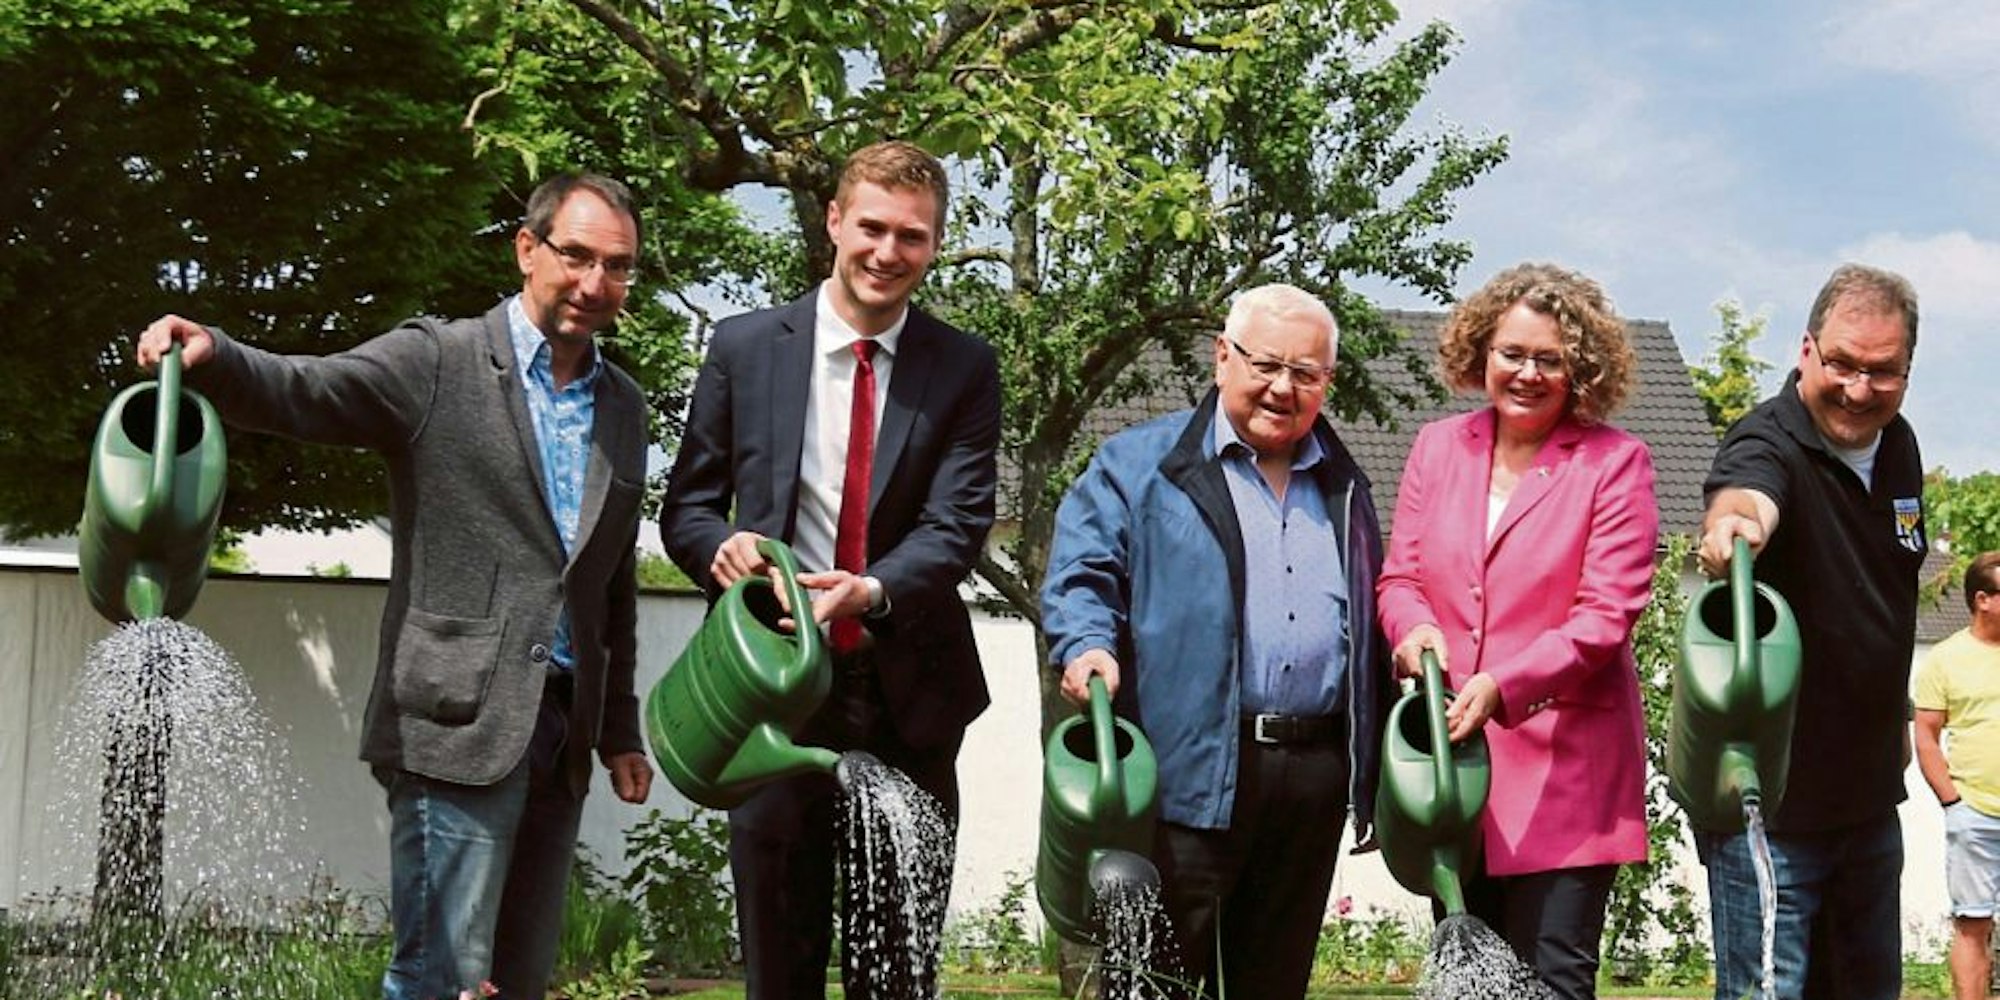 Die Akteure der Leader-Region Zülpicher Börde begrüßen die Umsetzung des Bienen-Projekts sehr.